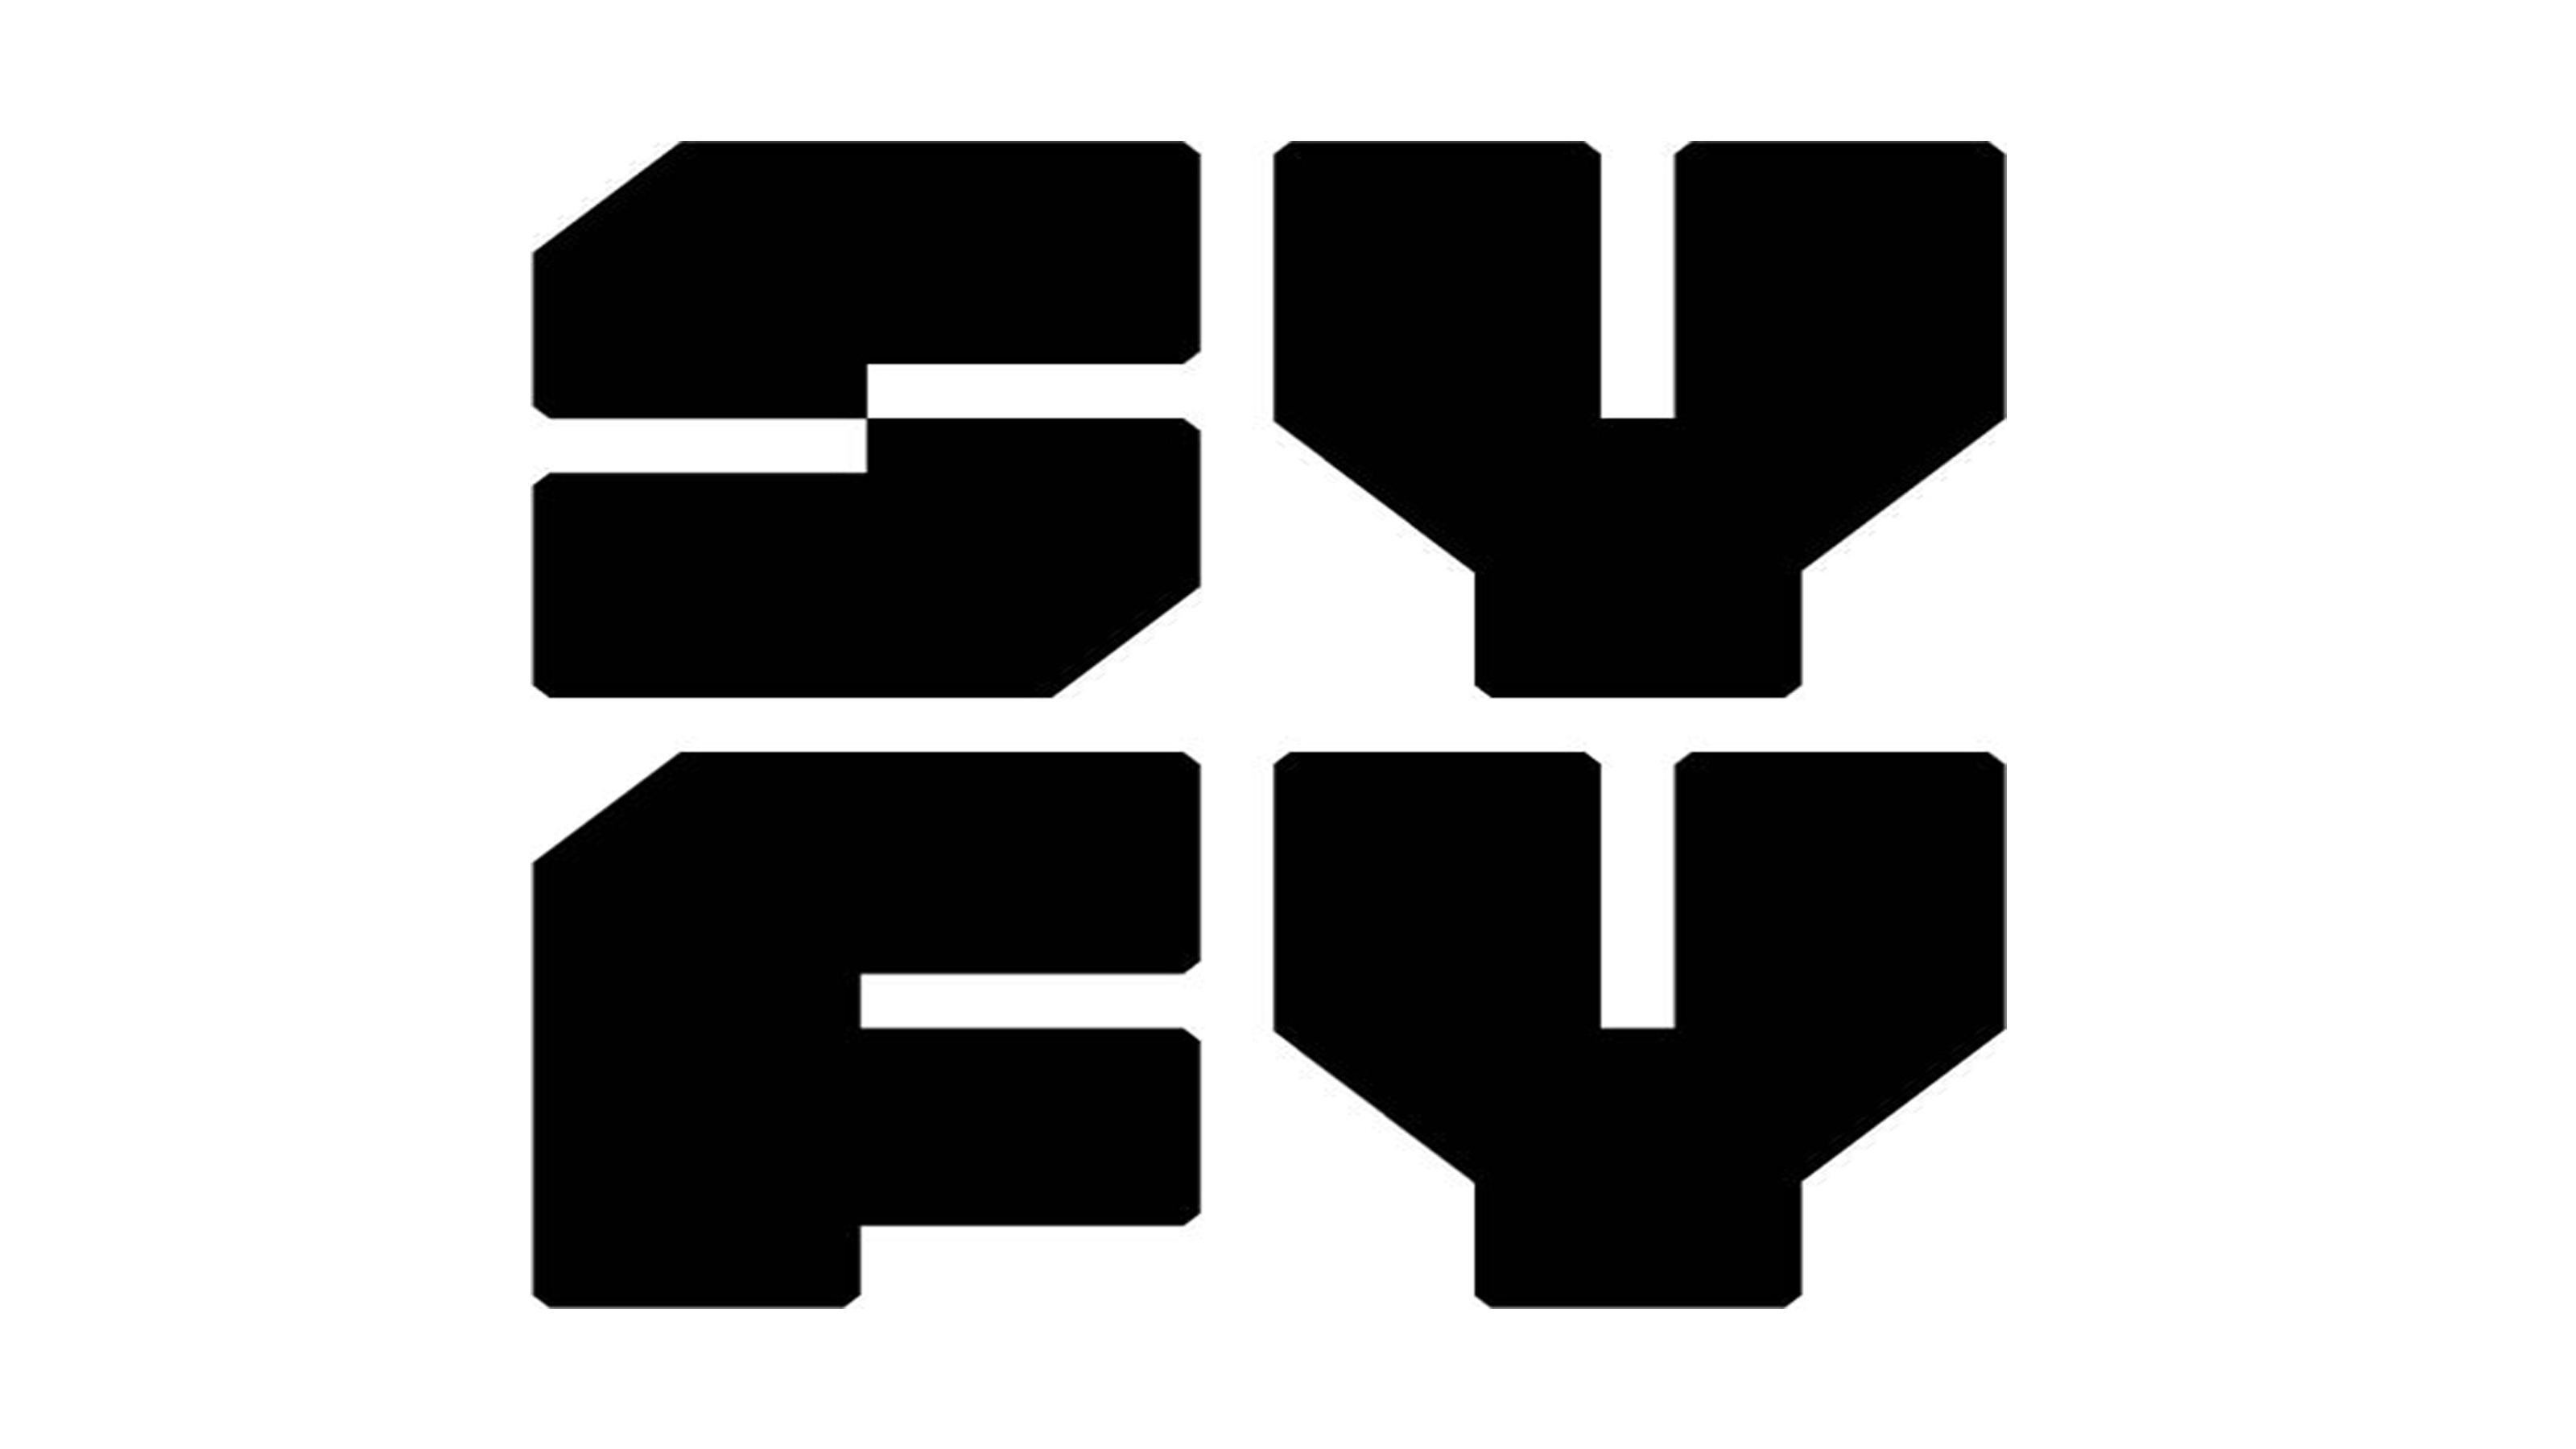 Syfy